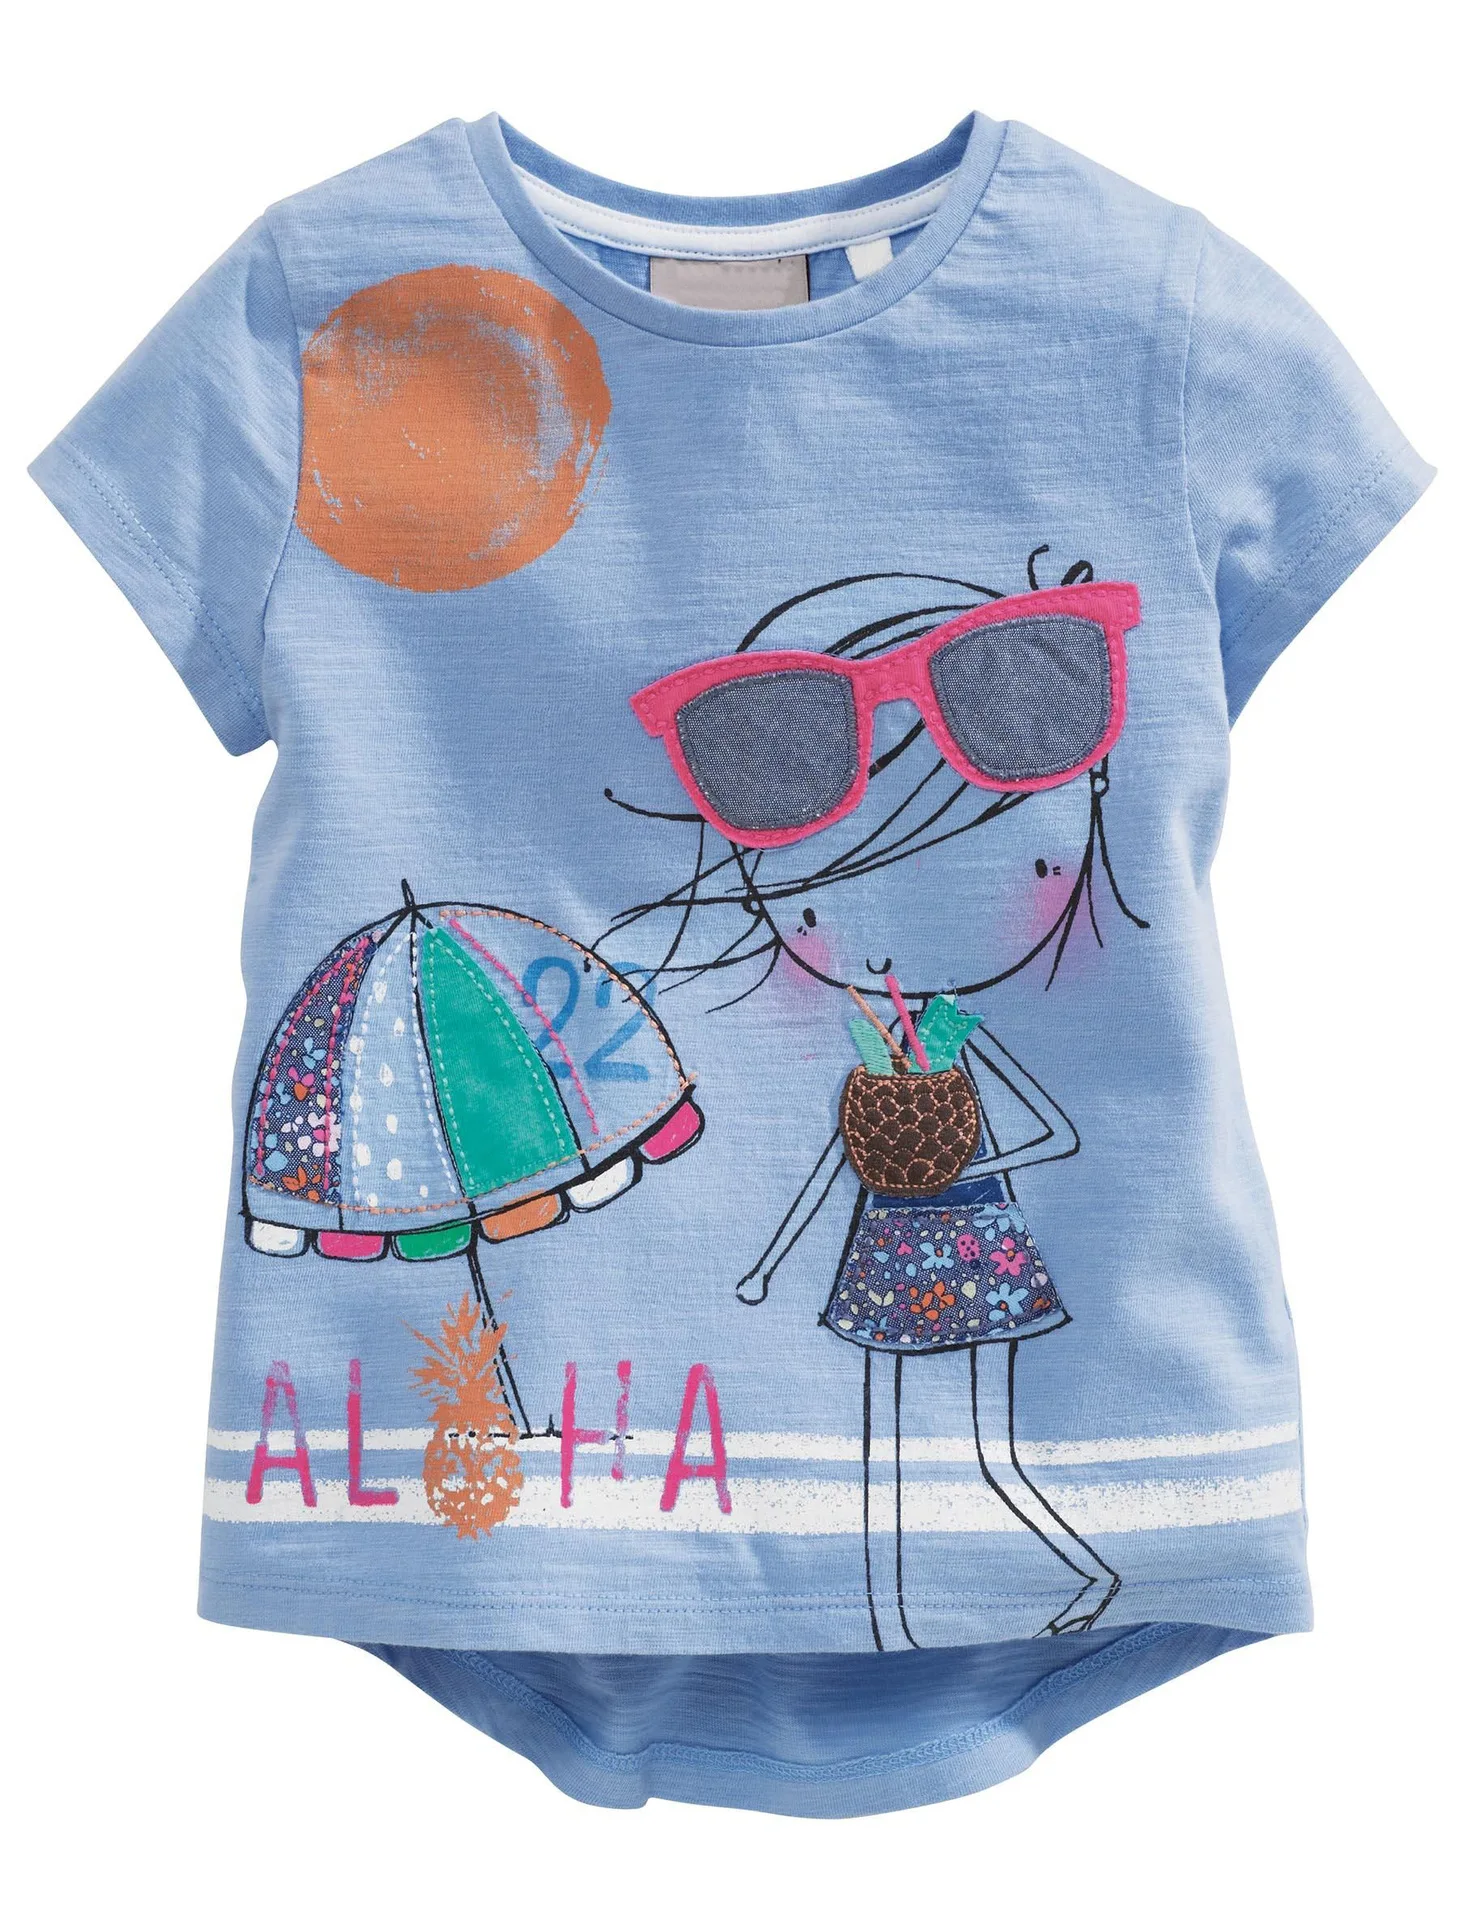 Брендовые летние футболки для девочек топы для девочек с короткими рукавами и рисунком, От 1 до 6 лет футболки для девочек, хлопок, футболка для маленьких девочек детская одежда